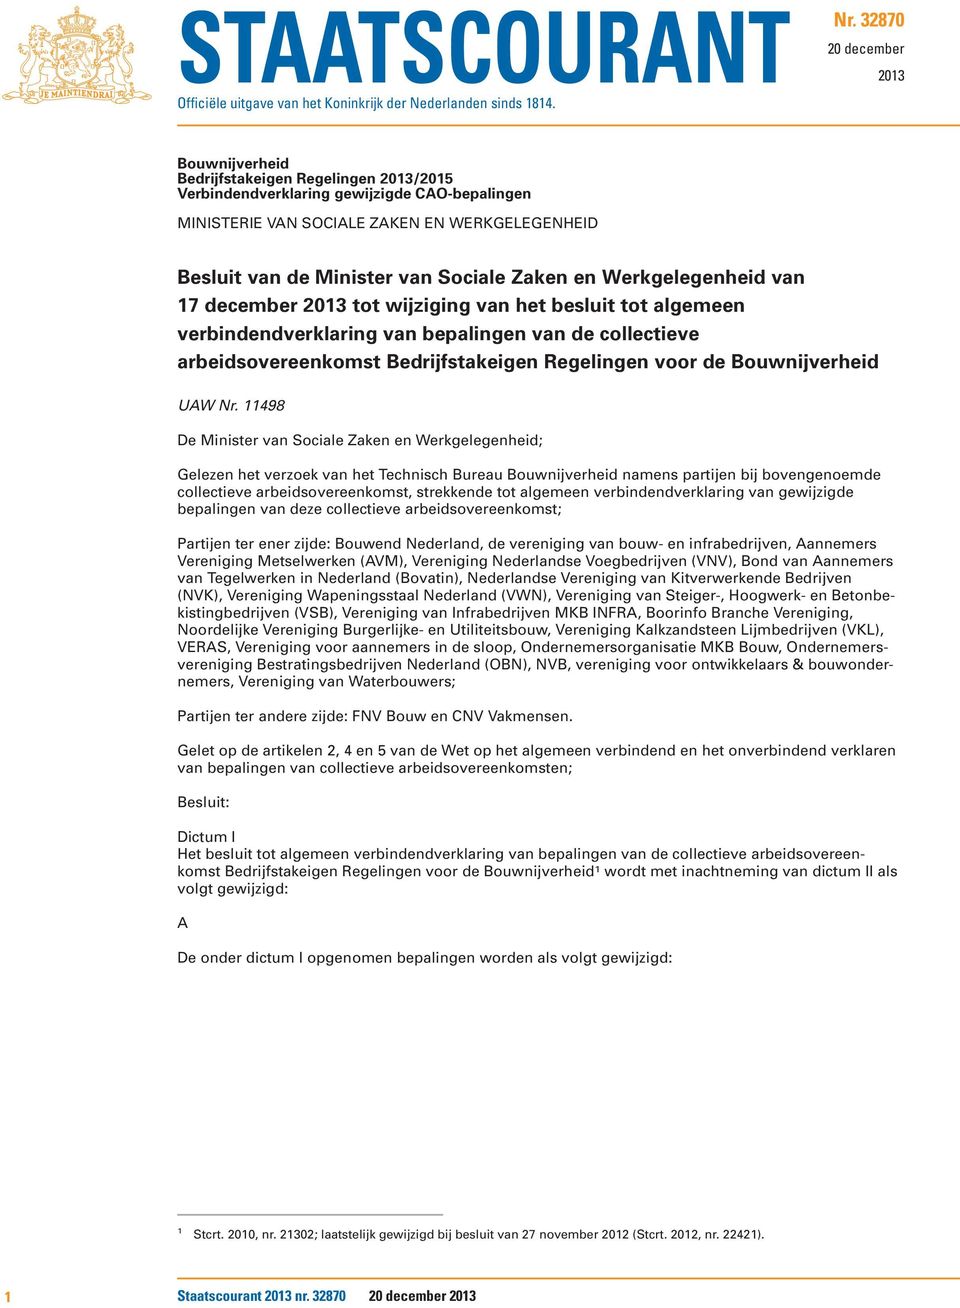 Sociale Zaken en Werkgelegenheid van 17 december 2013 tot wijziging van het besluit tot algemeen verbindendverklaring van bepalingen van de collectieve arbeidsovereenkomst Bedrijfstakeigen Regelingen